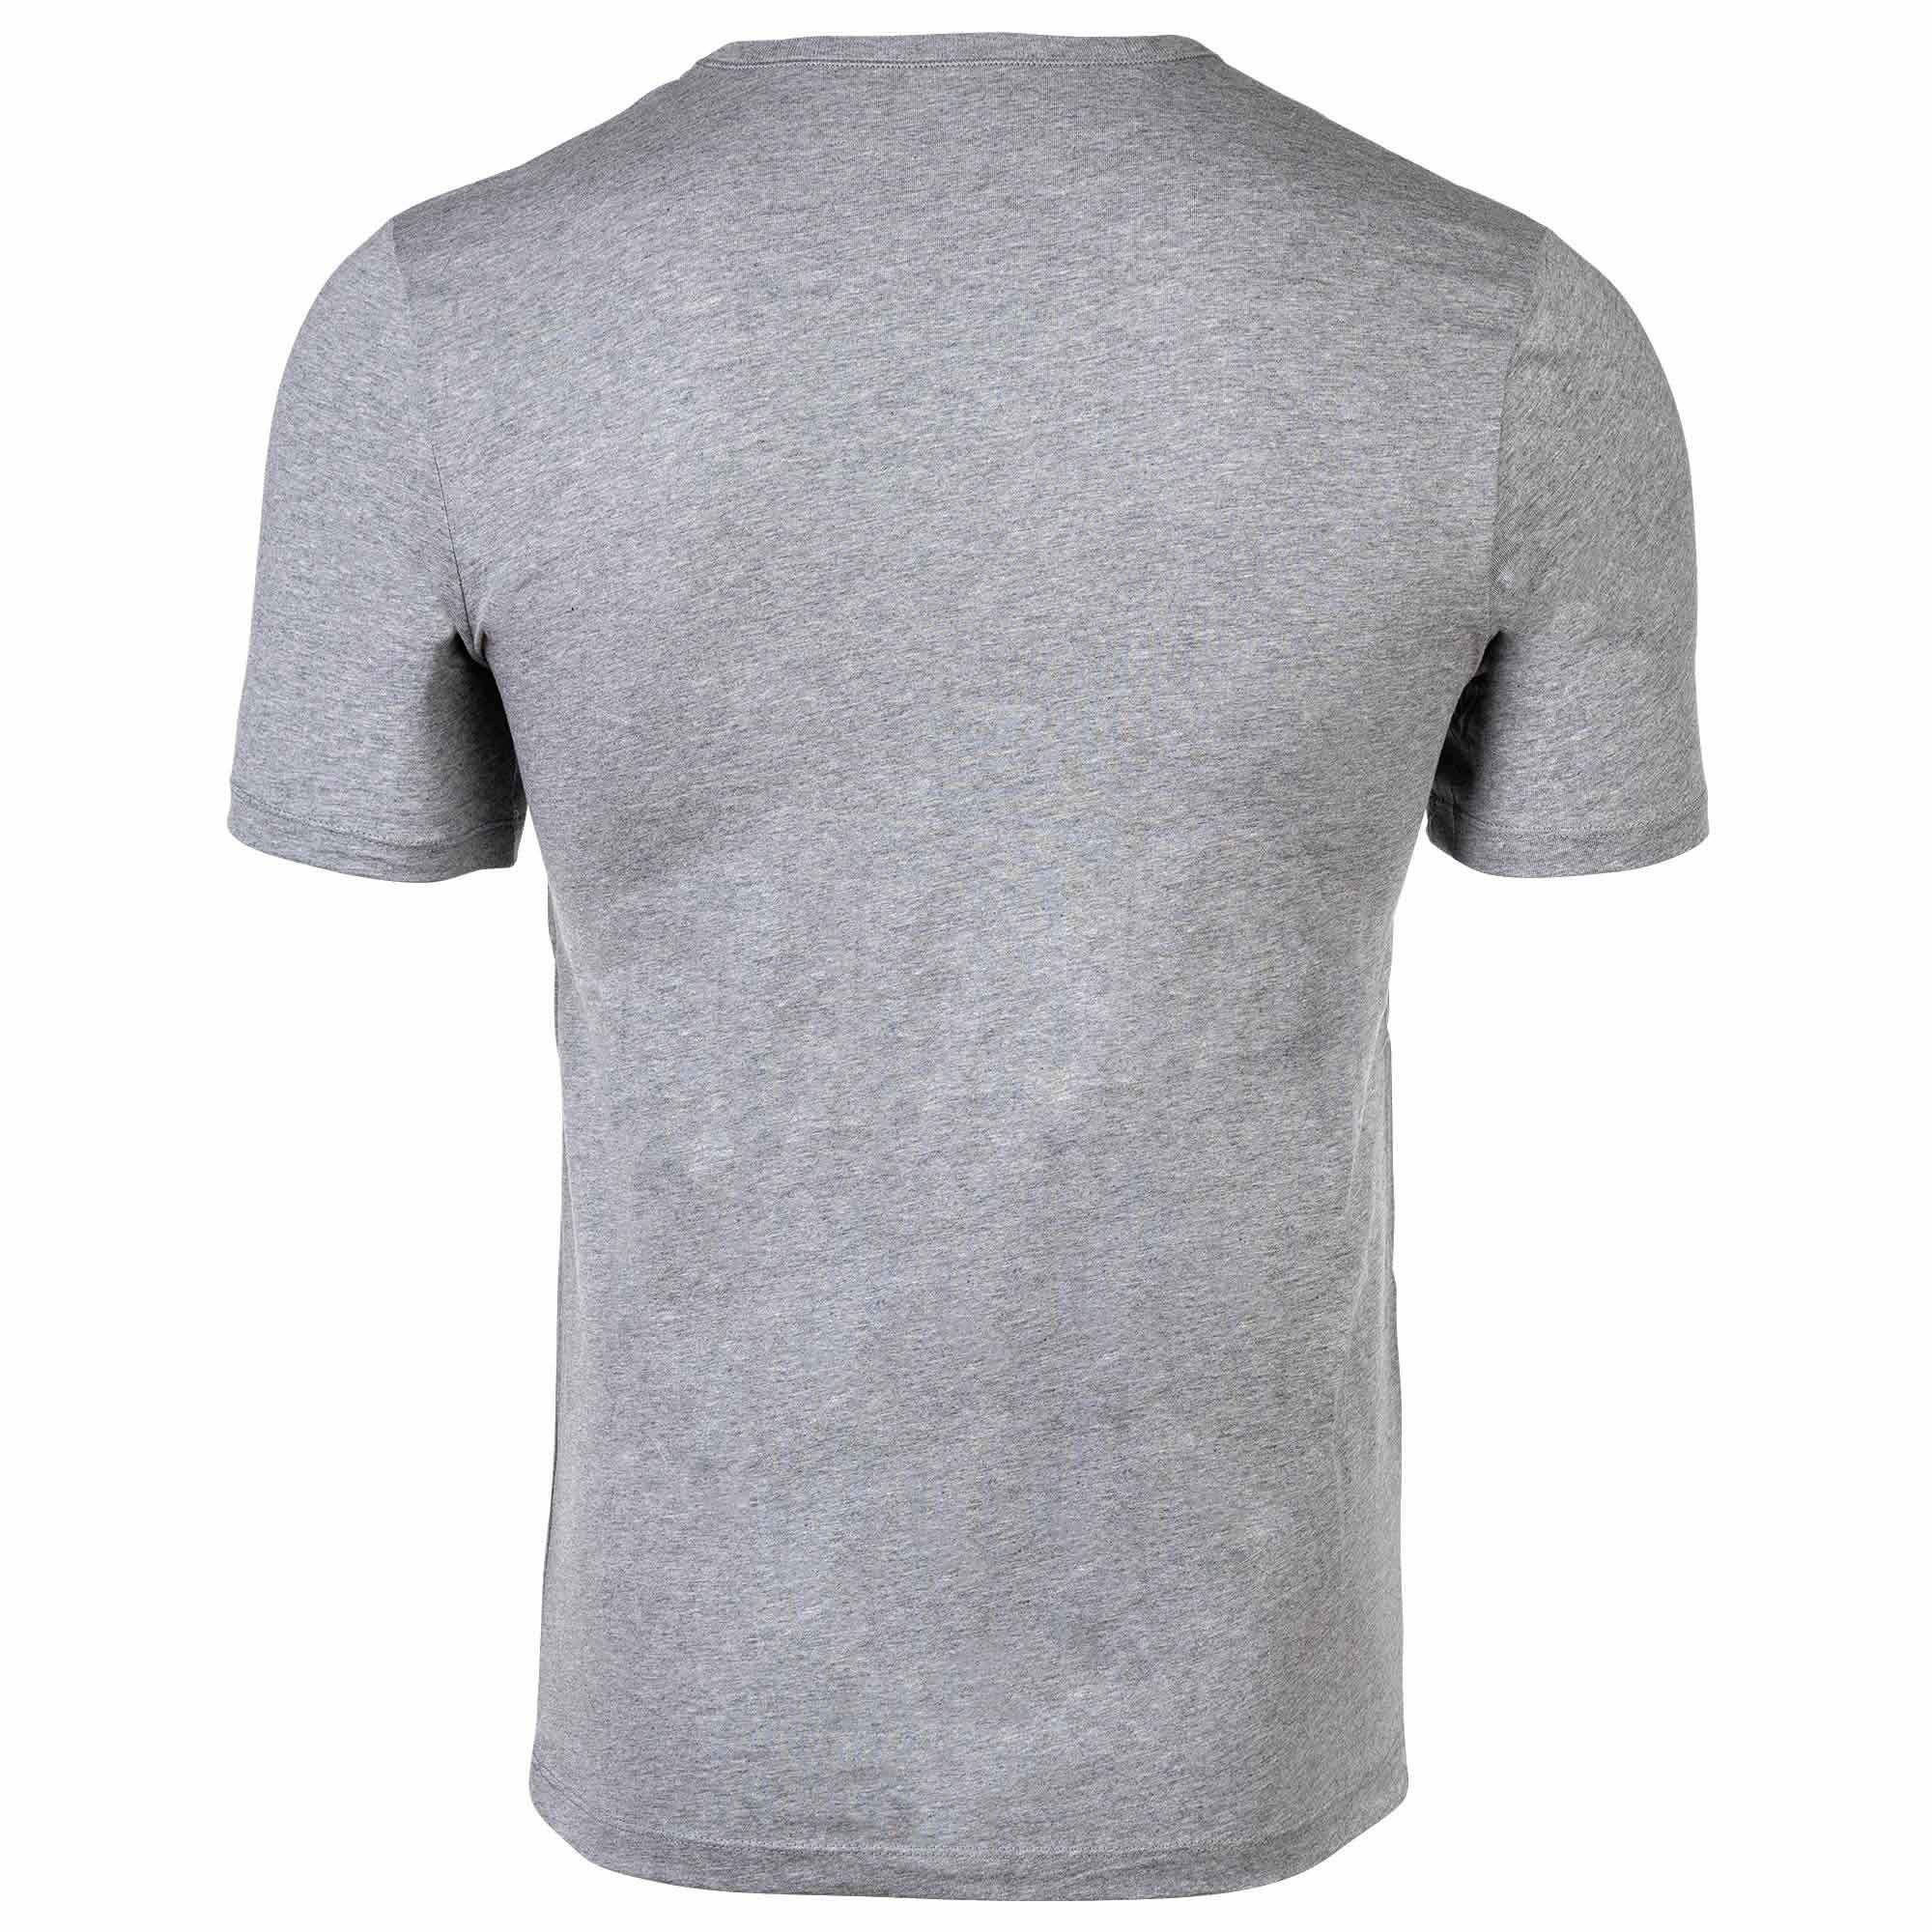 Herren - Pack Schwarz/Grau/Weiß Rundhals 6er RN T-Shirt, BOSS Classic, T-Shirt